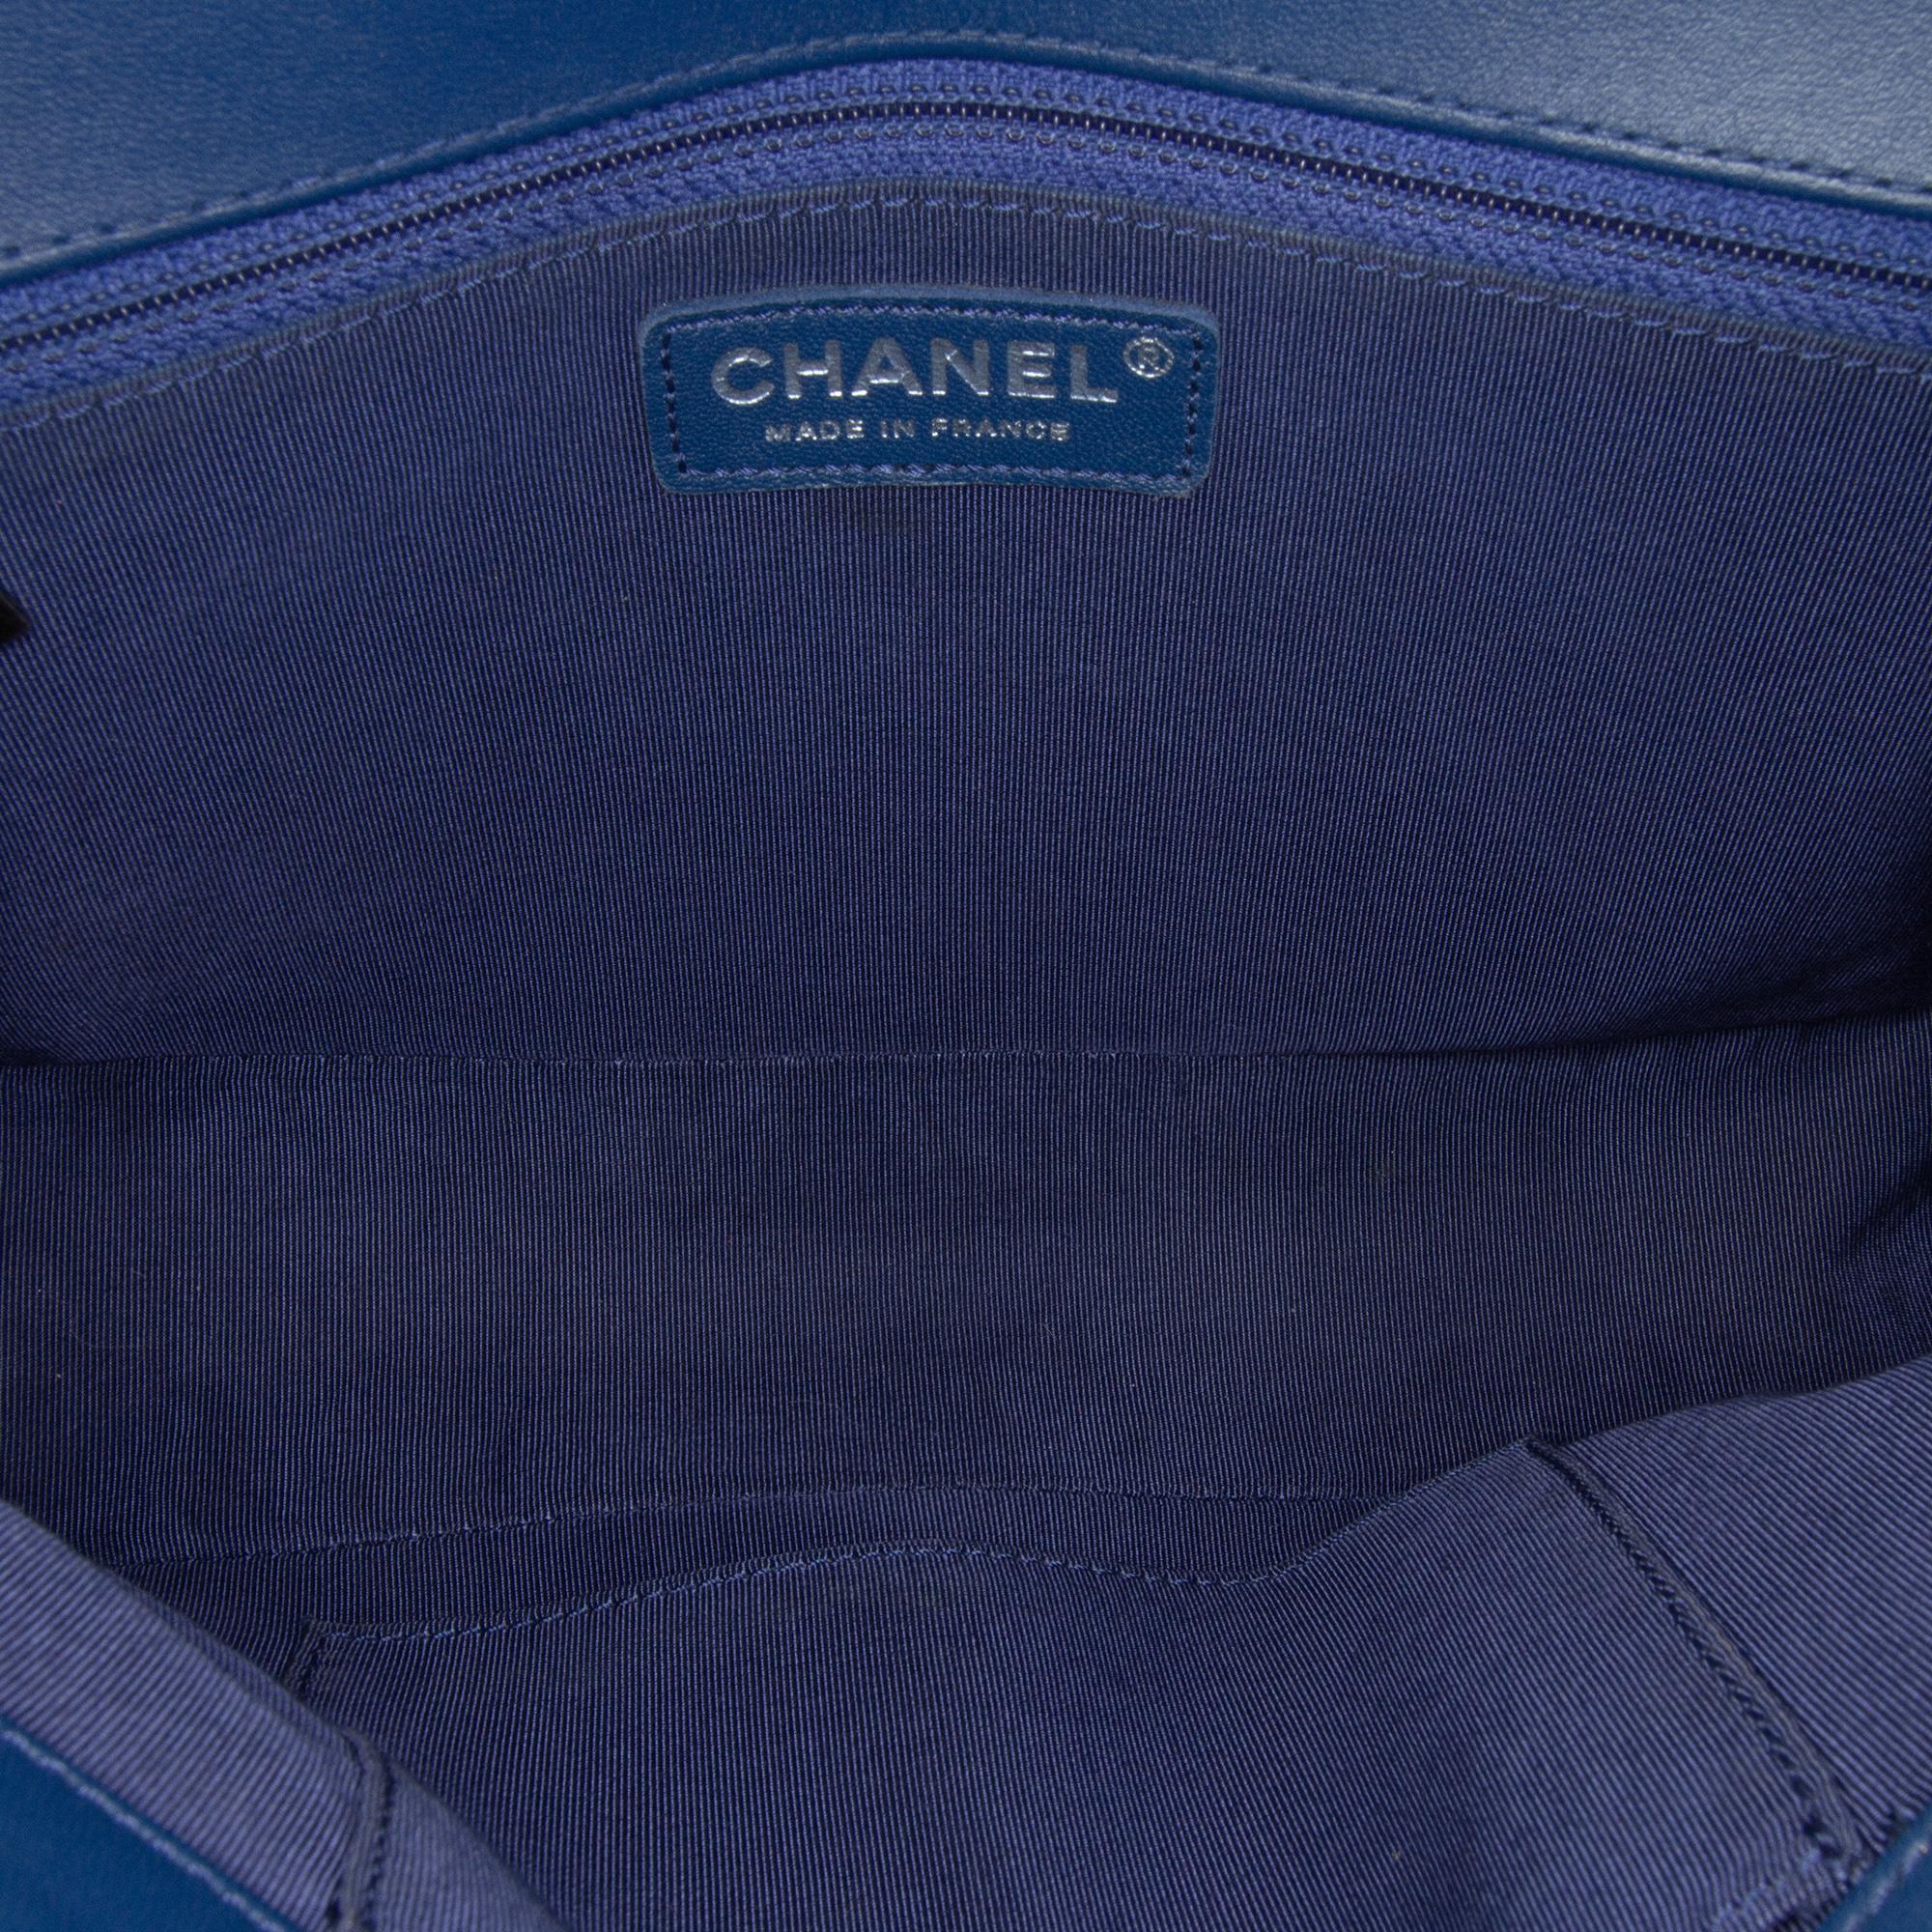 Chanel Blue Medium Lambskin Boy Flap Bag